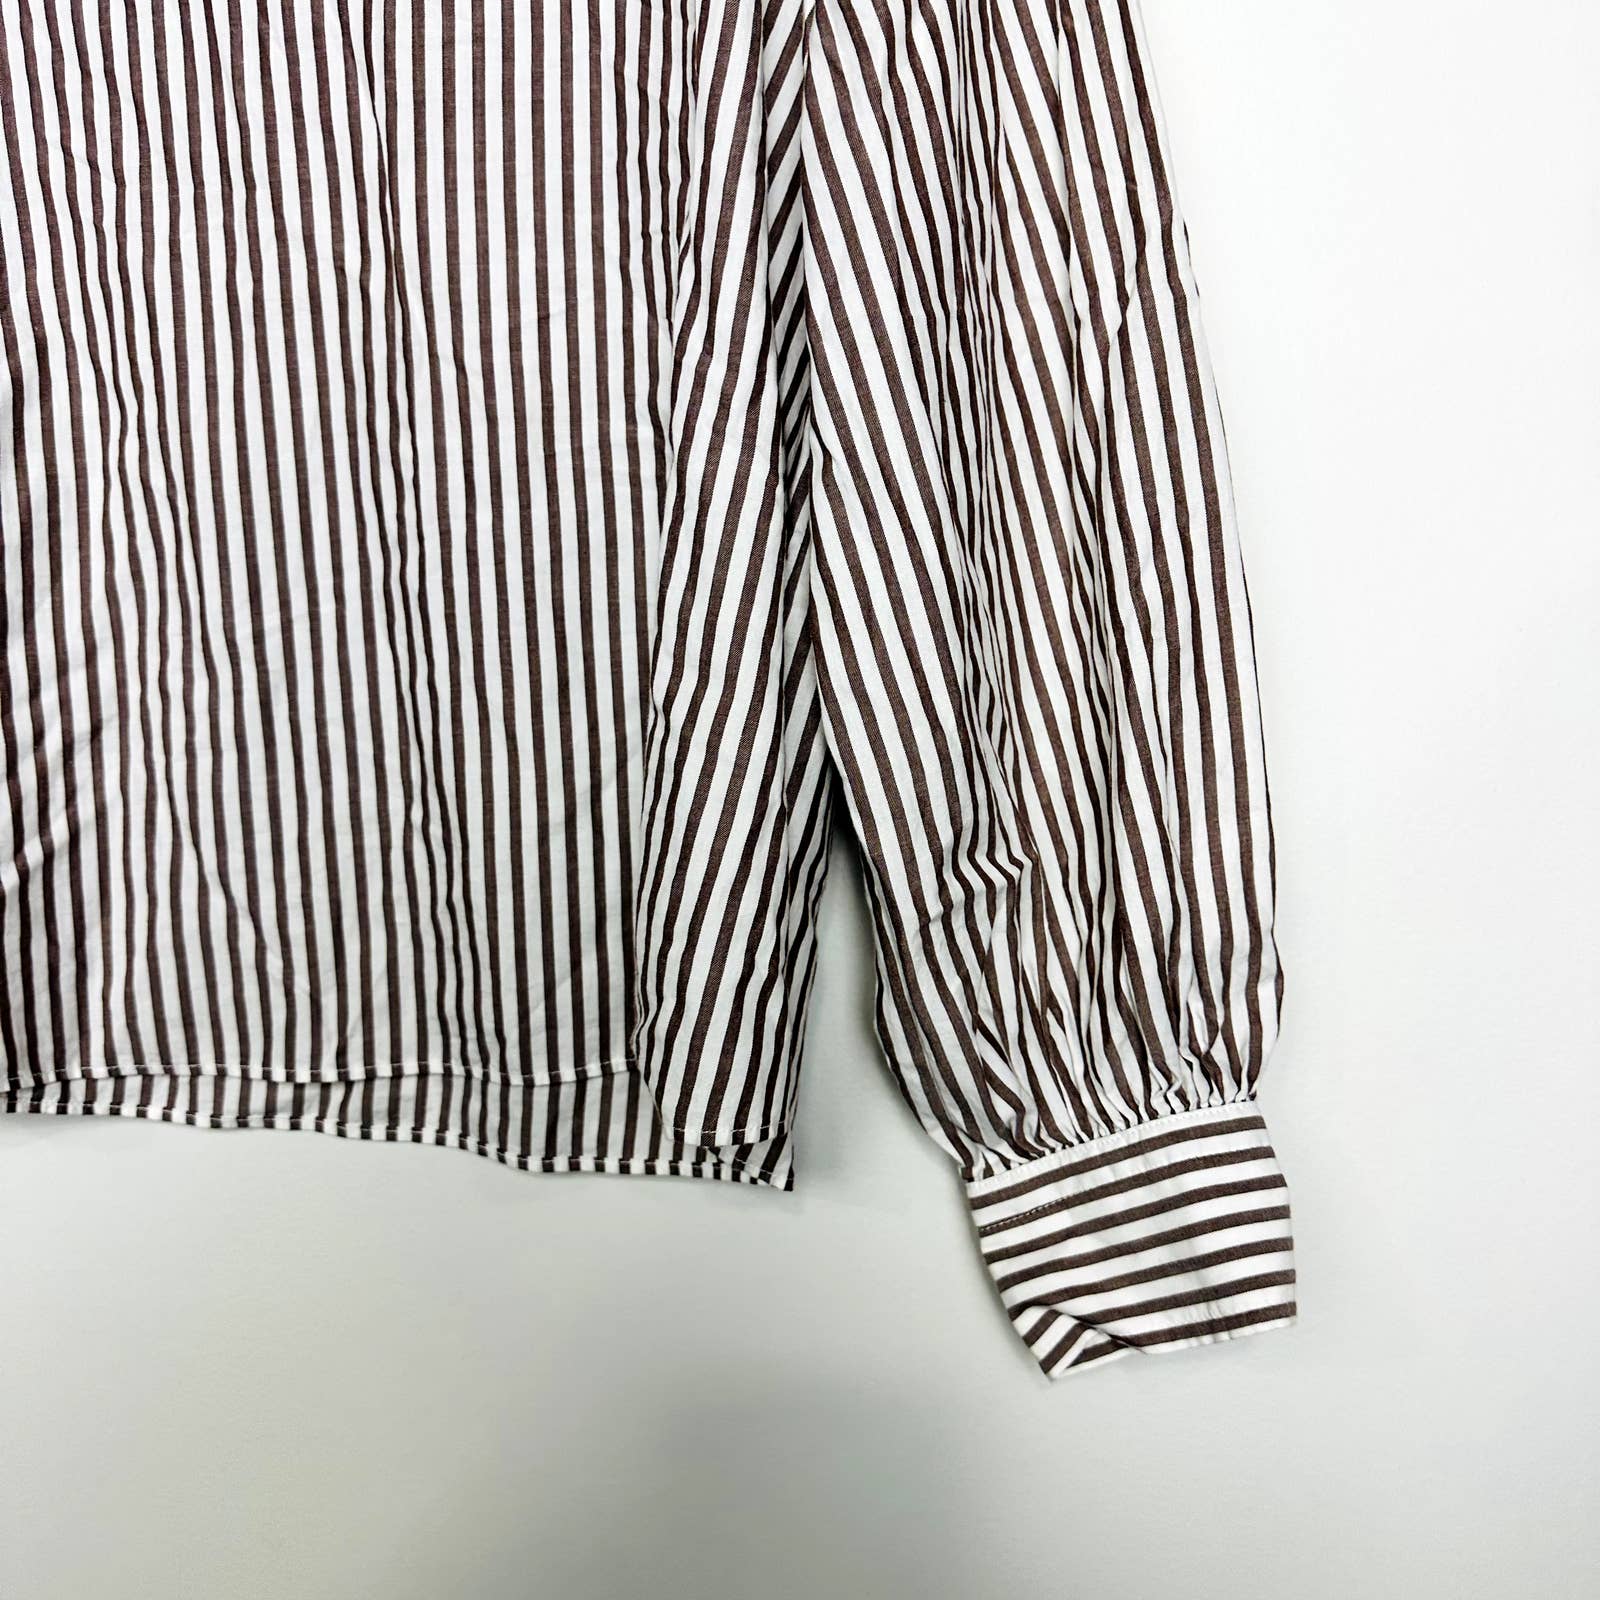 Everlane NWOT Wing Shoulder Mockneck Stripes Long Sleeve Top Pecan White Size 4